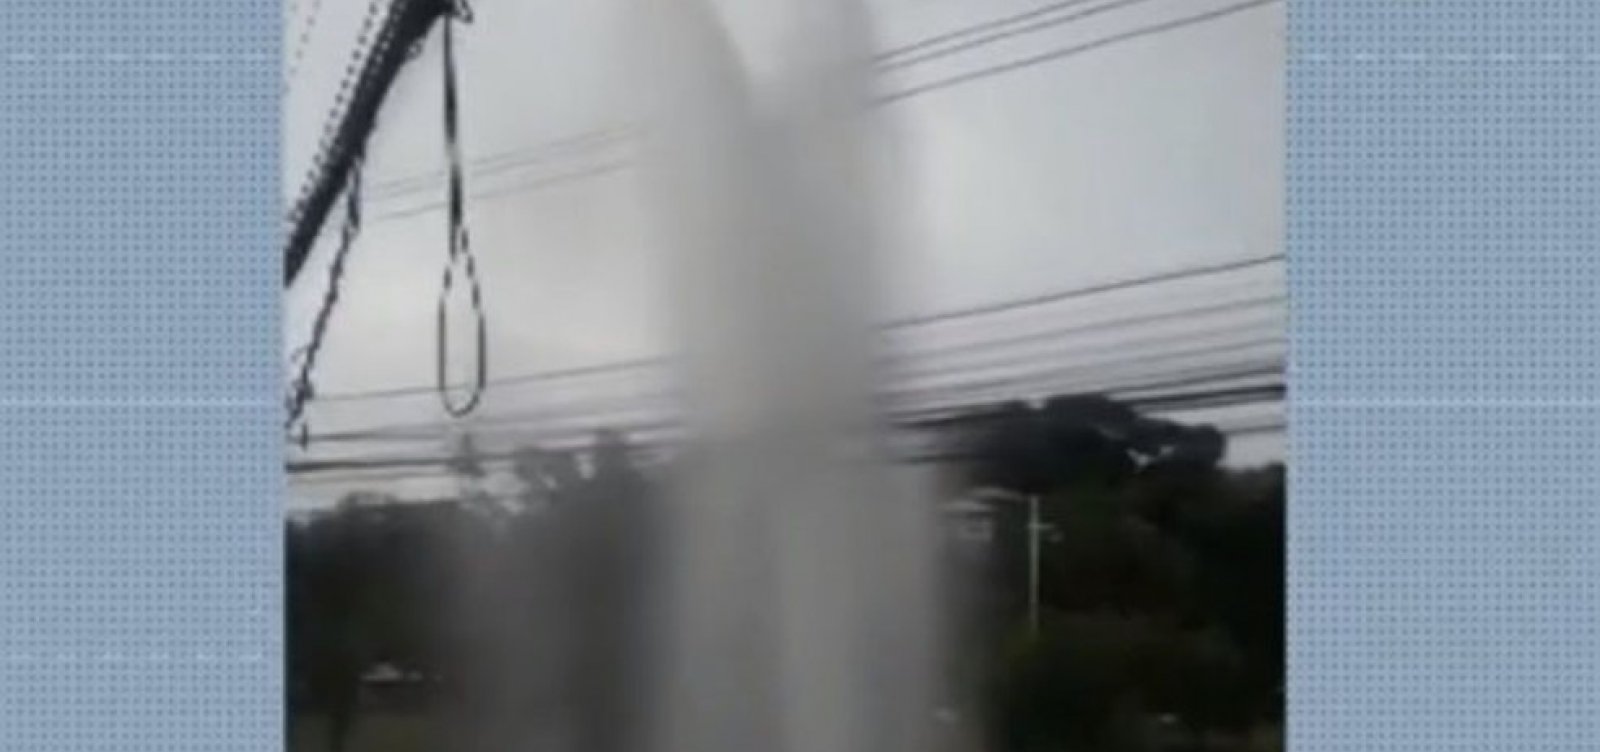 Bairros de Salvador ficam sem água após tubulação se romper na Avenida Juracy Magalhães